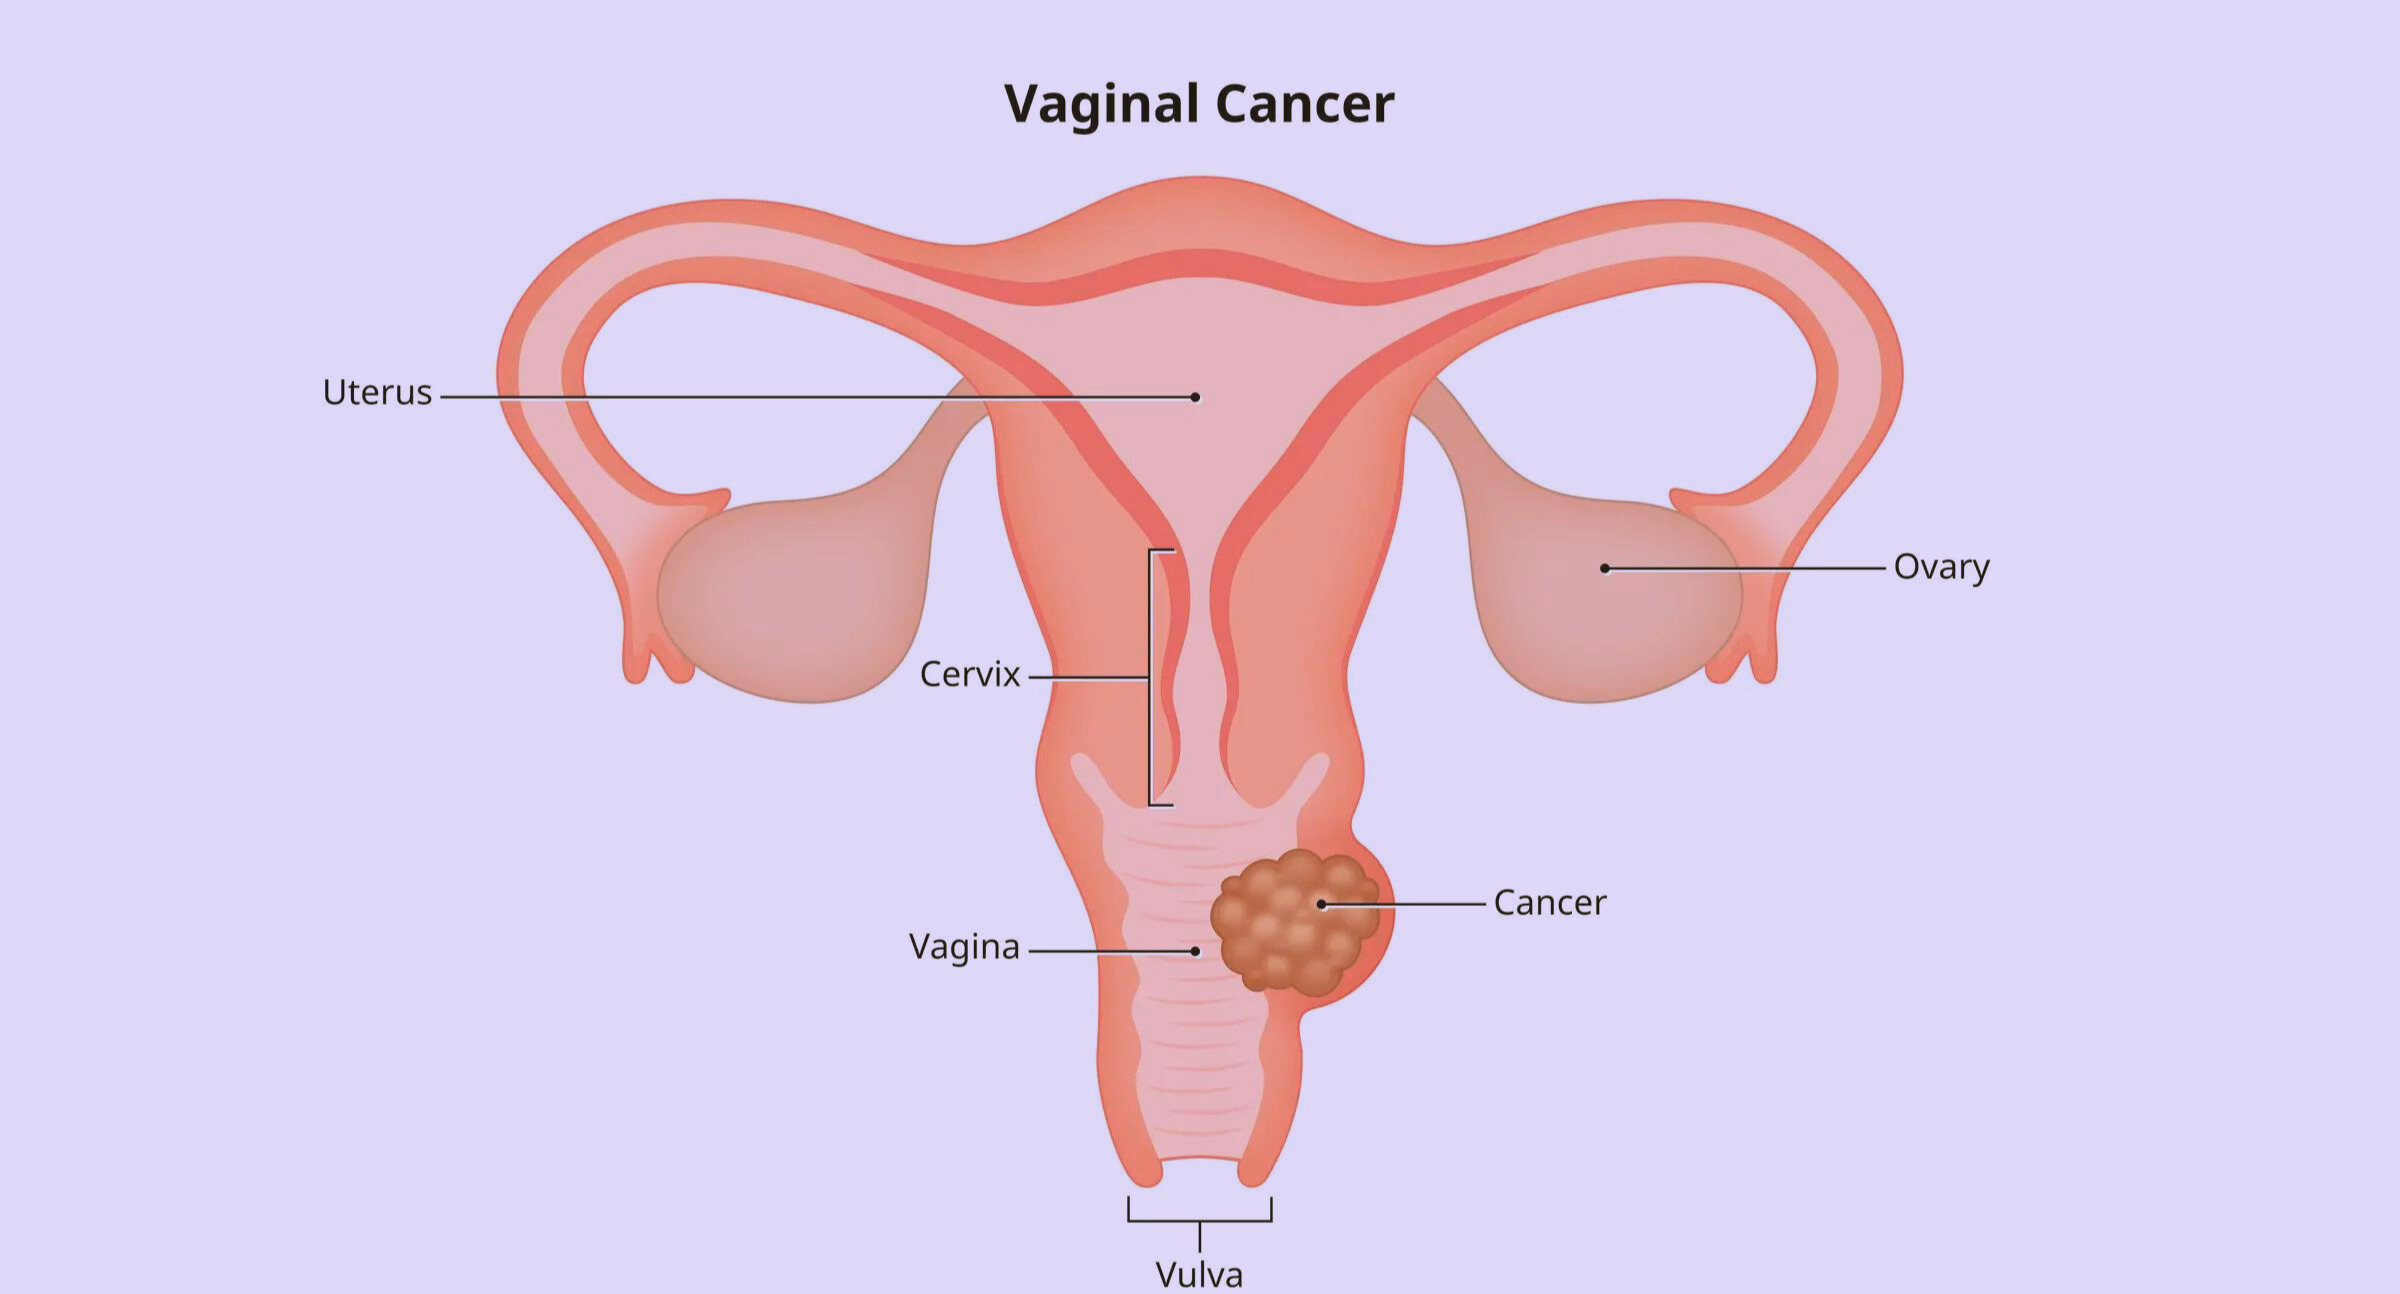 vaginal cancer